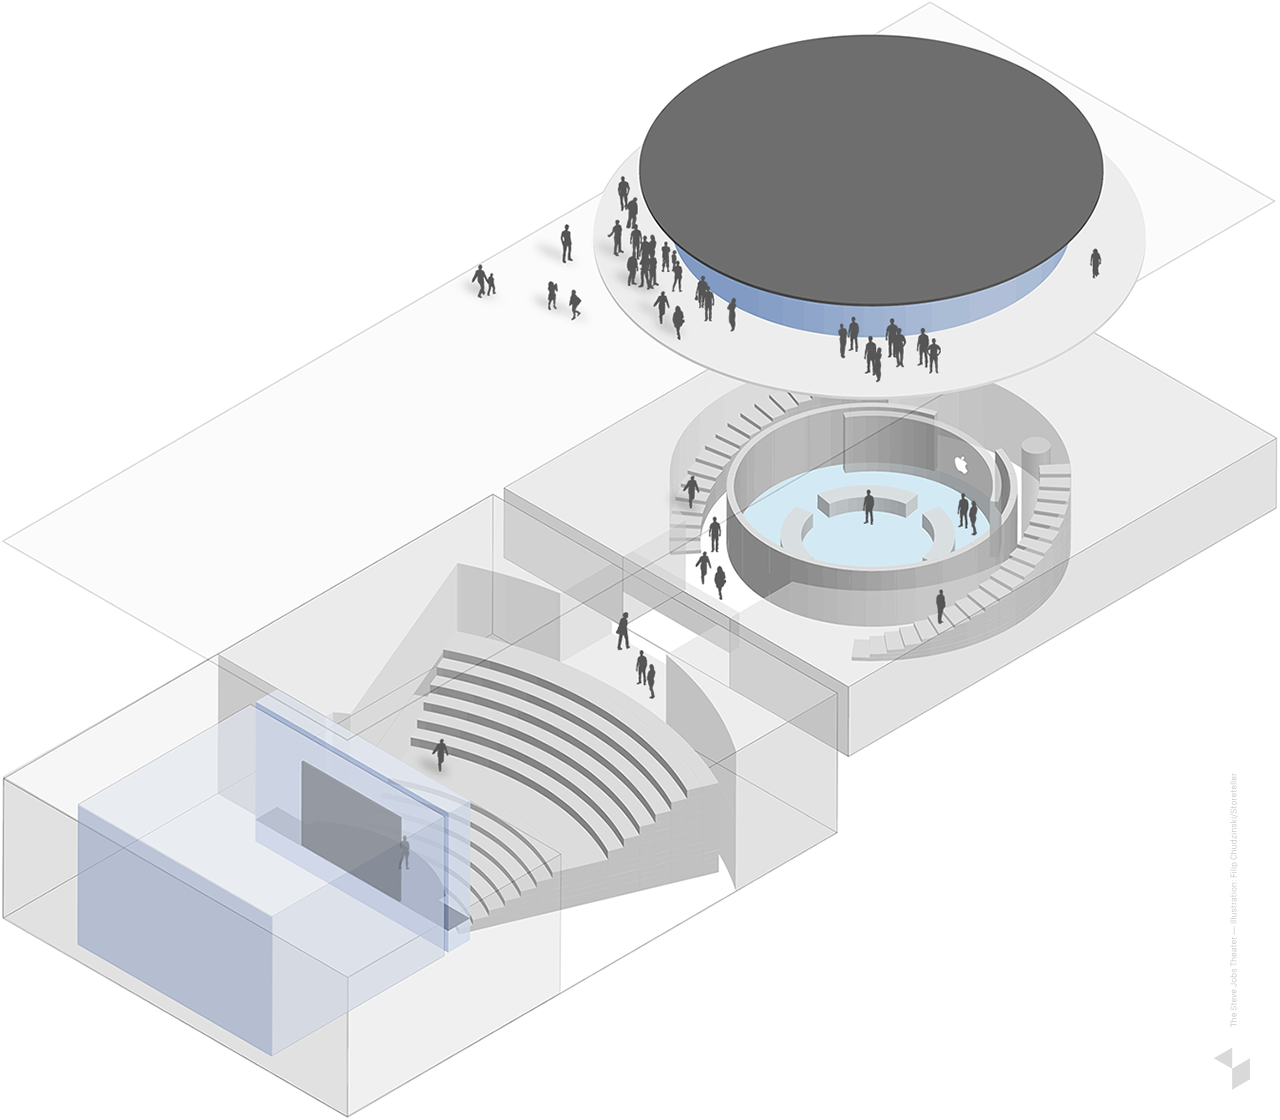 Das Steve Jobs Theater in Cupertino in einer vereinfachten Darstellung